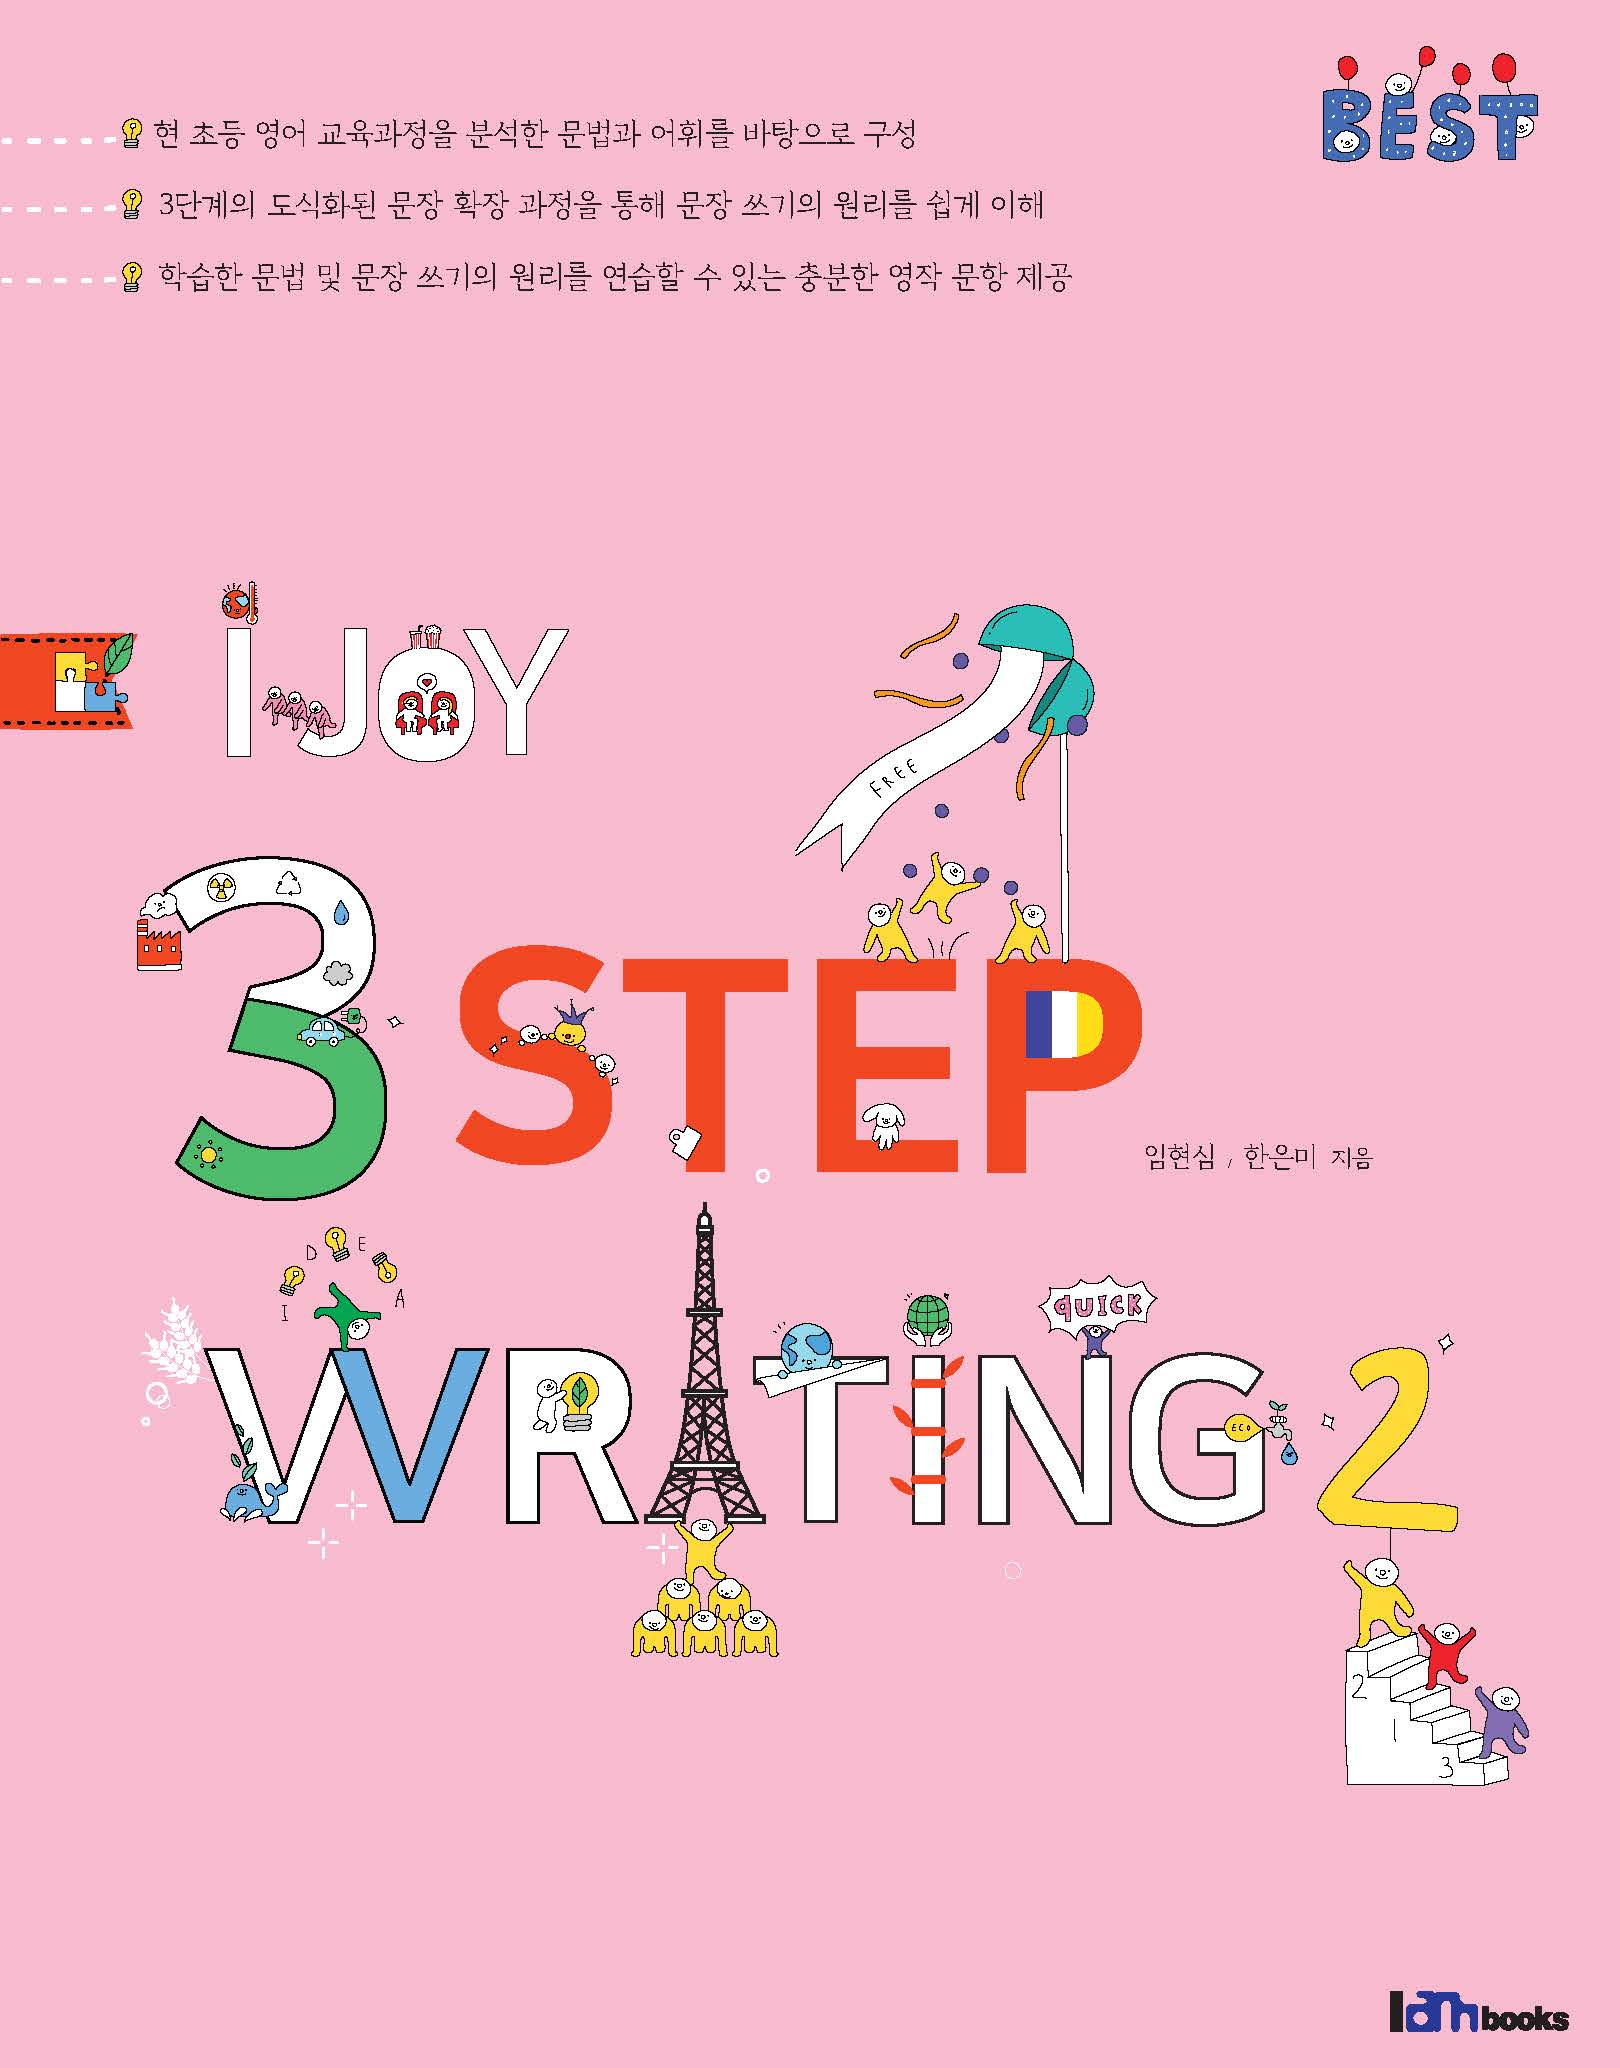 I Joy 3 Step Writing 2